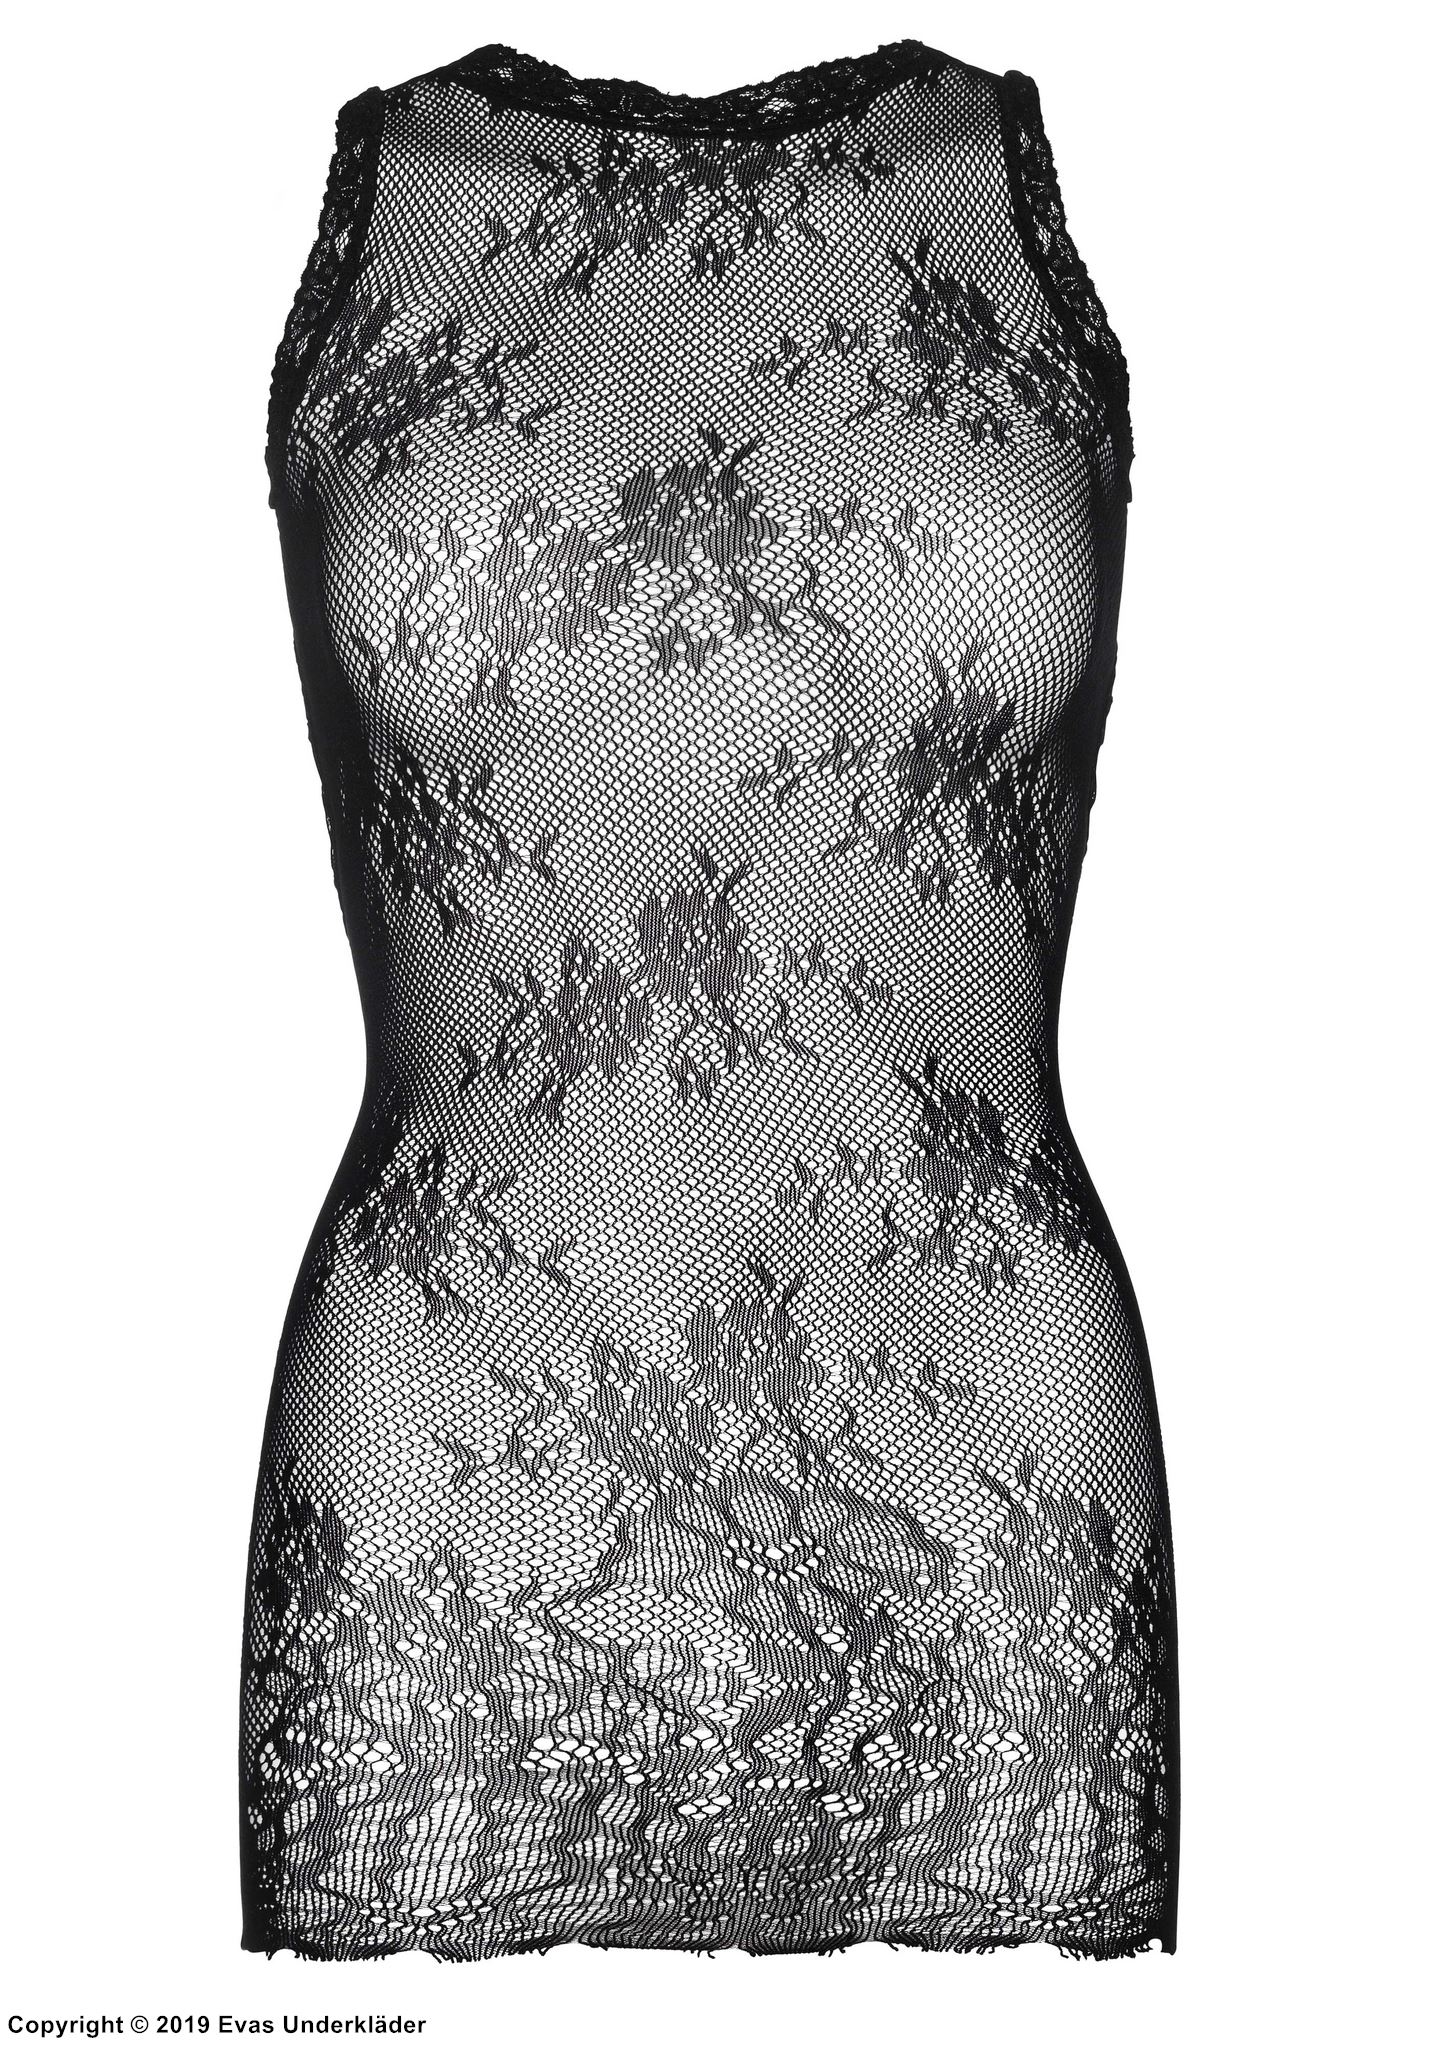 Night mini dress, sheer mesh, lace edge, flowers, plus size